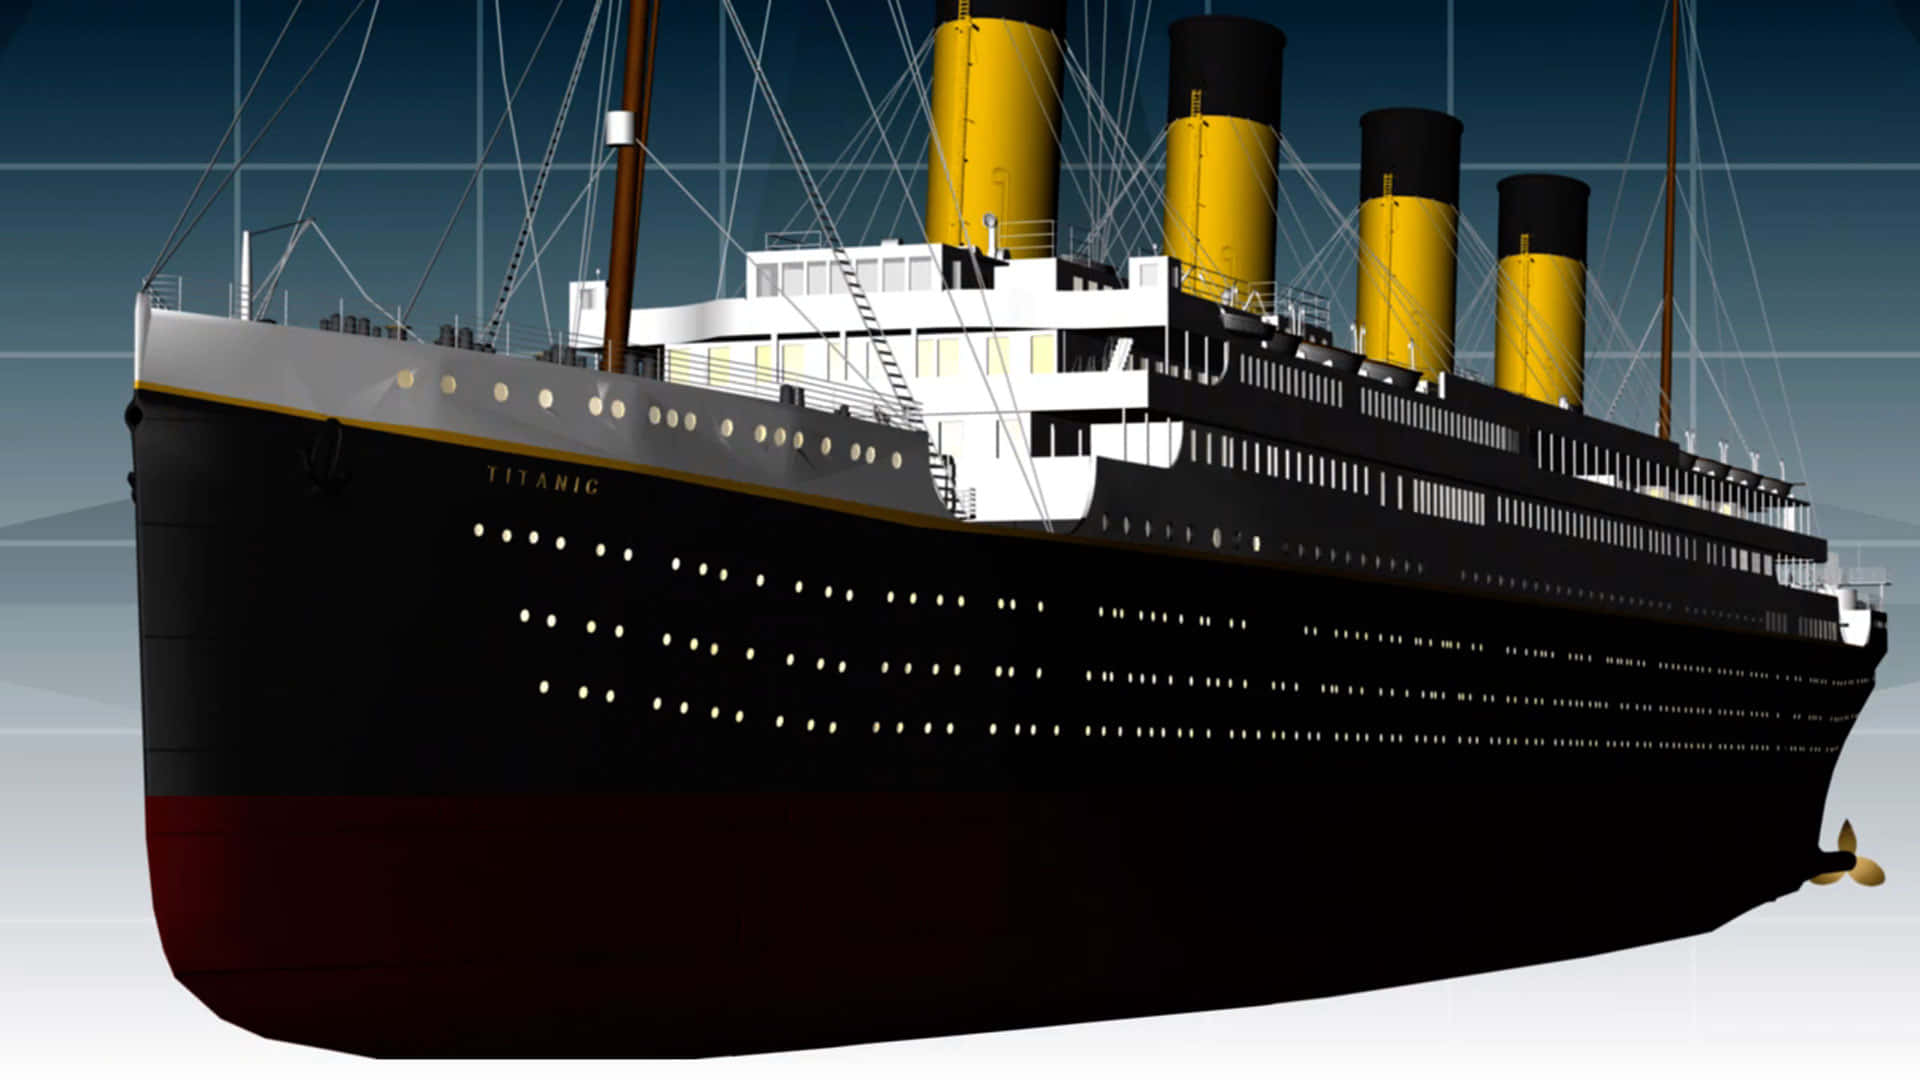 Titanicet Historisk Og Ikonisk Skib